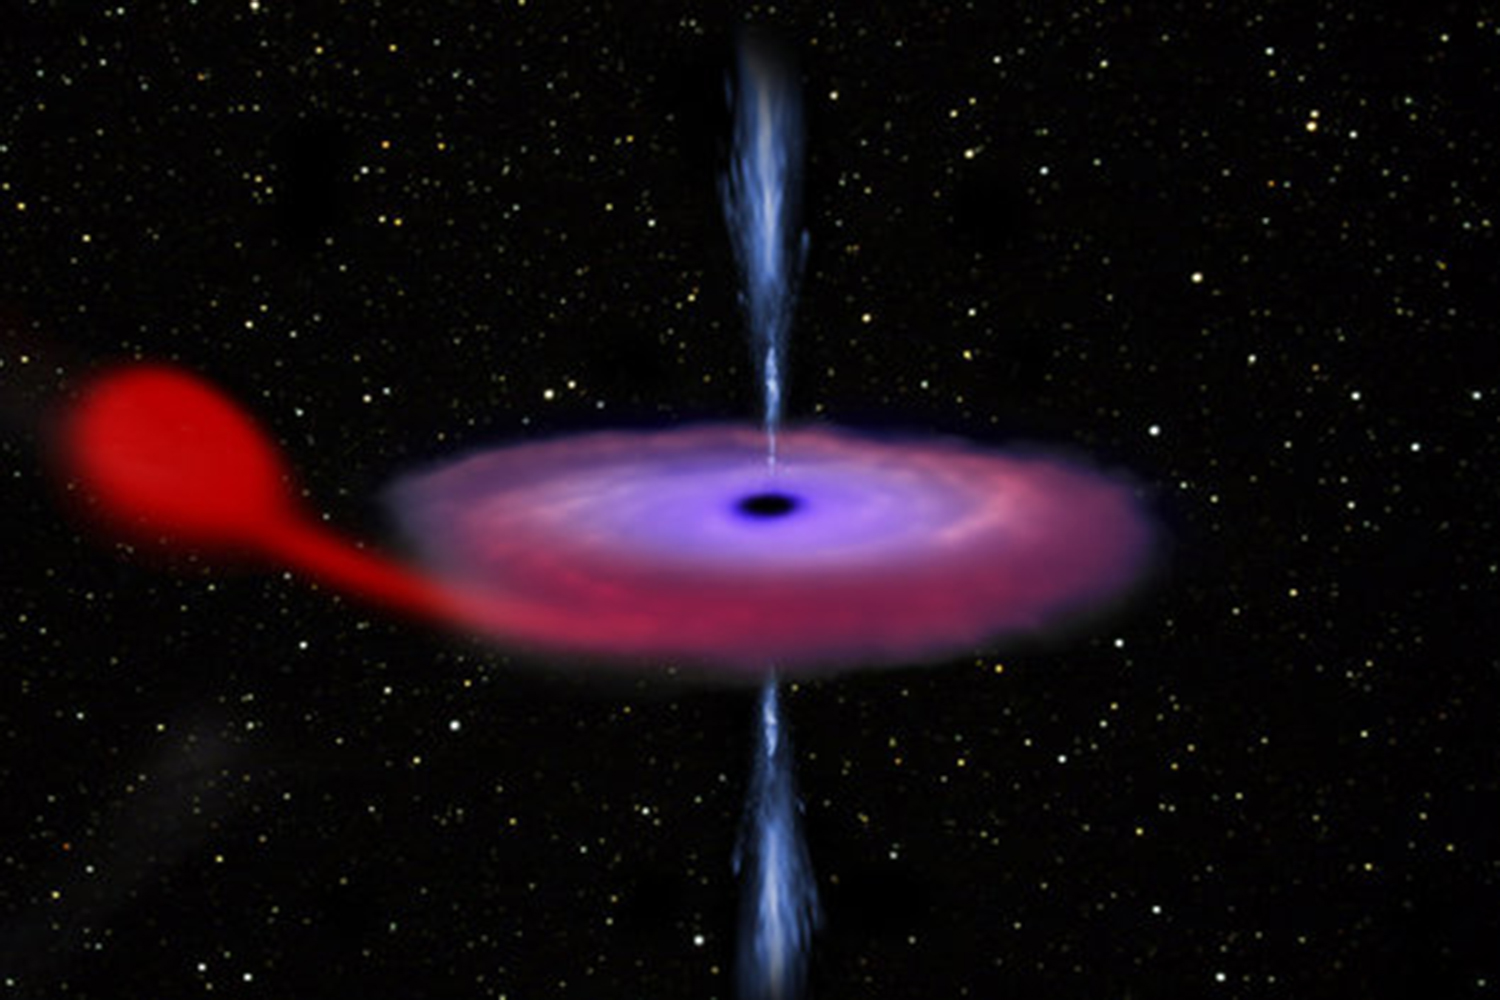 Consiguen observar por primera ver cómo un agujero negro engulle y expulsa masa